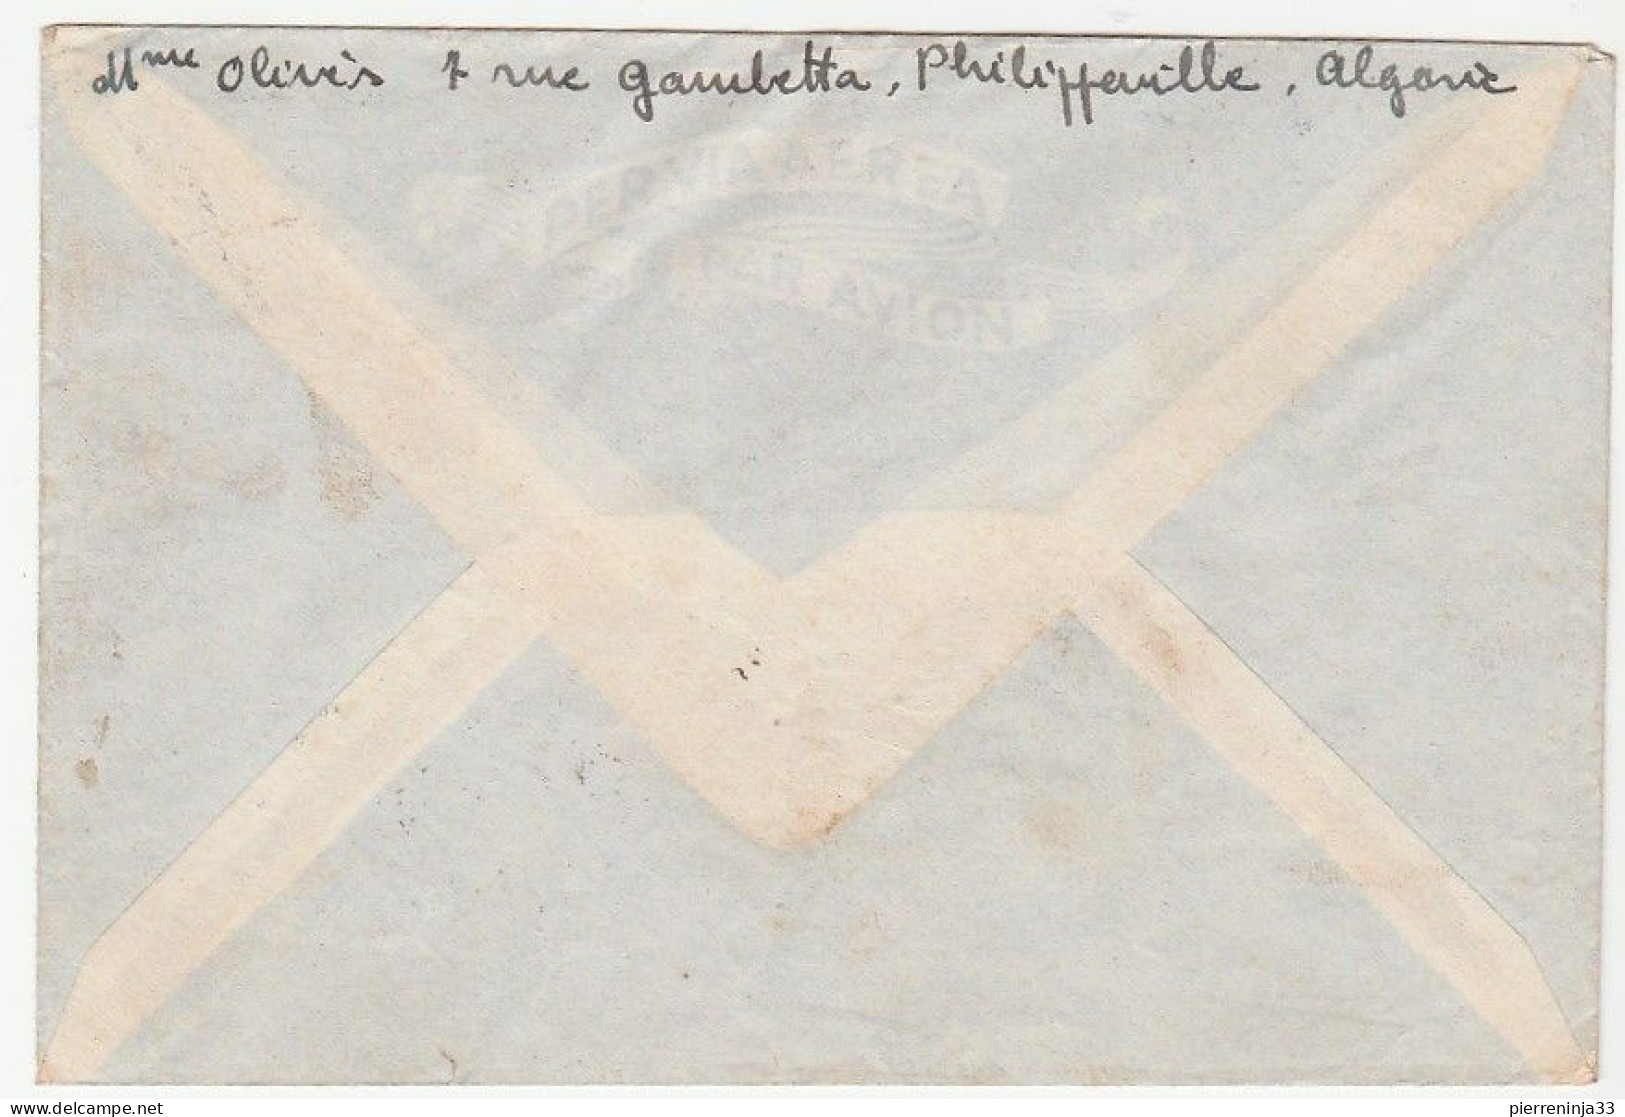 Lettre Avec Cachet "3è Salon De Propagande Philatélique De L'Afrique Du Nord, Philippeville, Algérie, 1945" - Covers & Documents